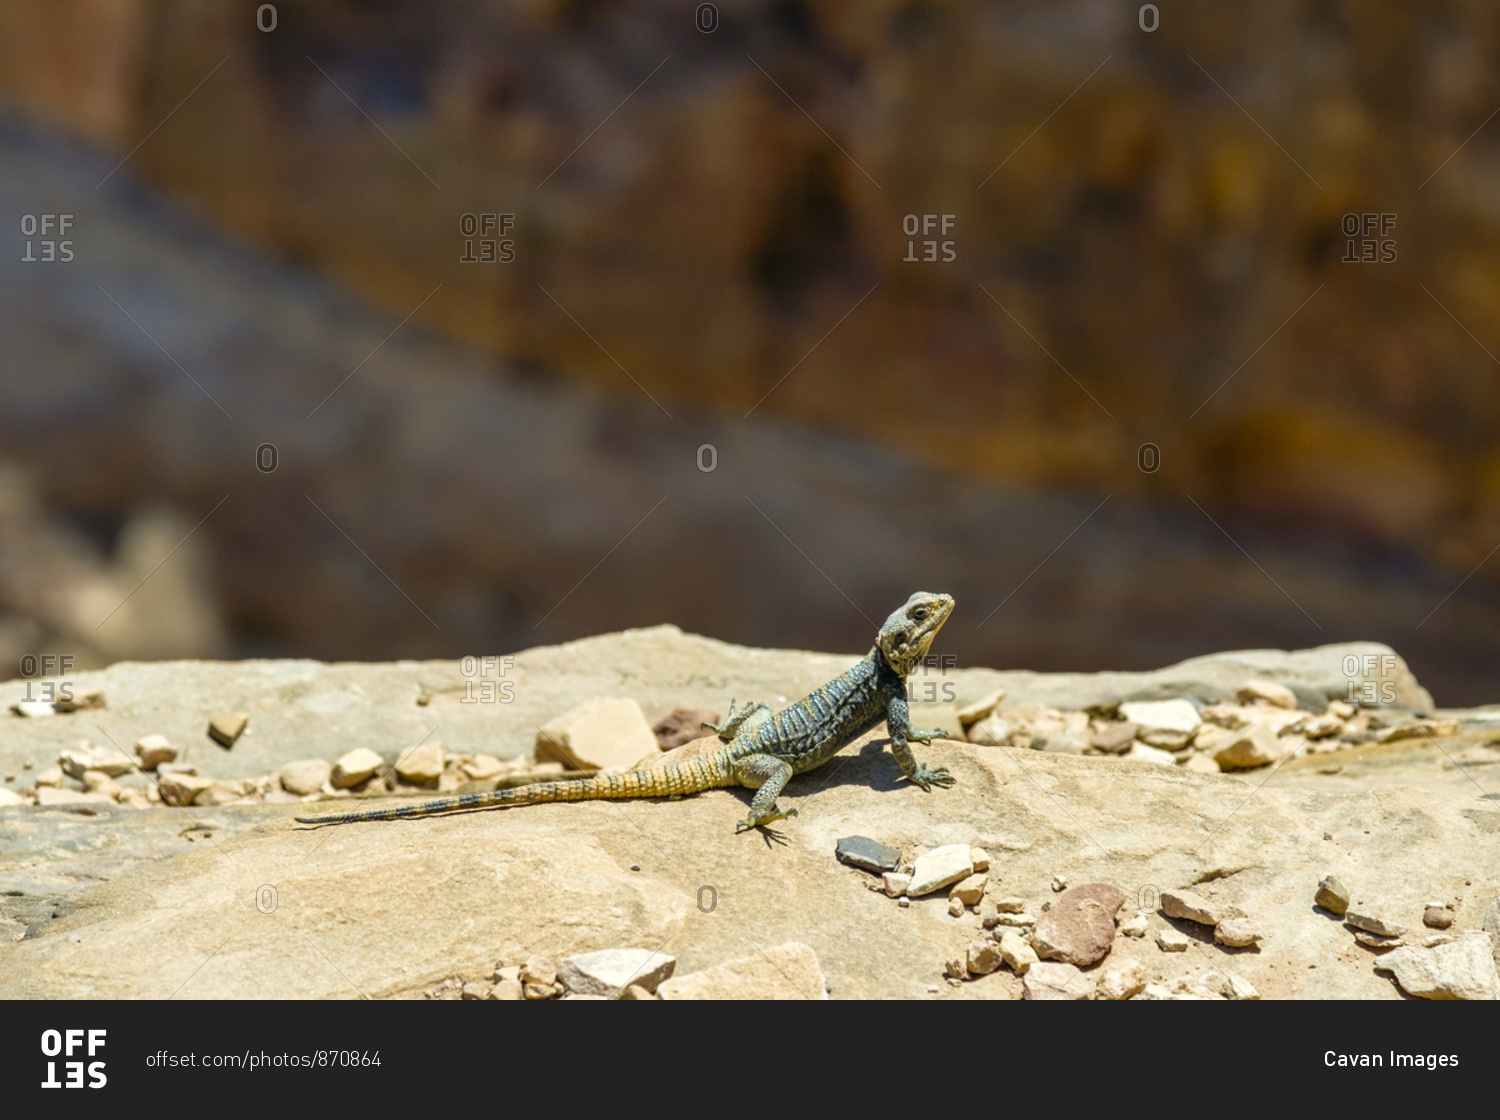 Lizard sunbathing on a rock, petra, jordan